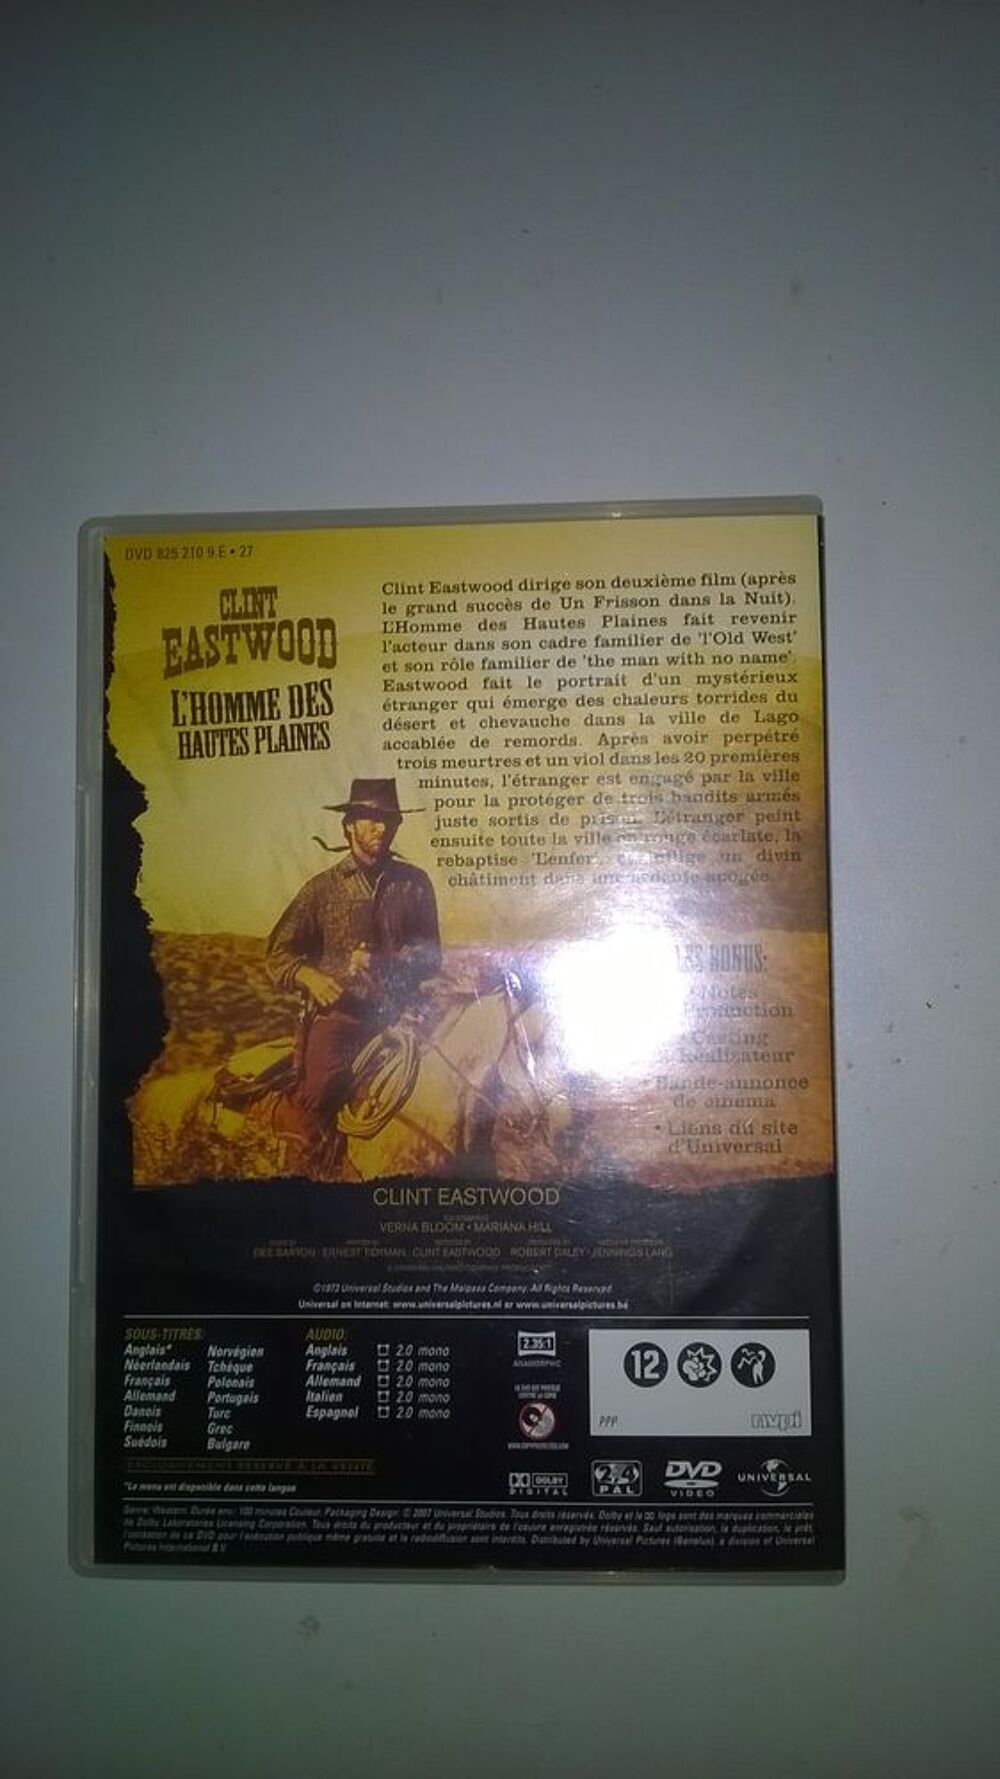 DVD L'homme de hautes plaines
clint eastwood
1973 DVD et blu-ray